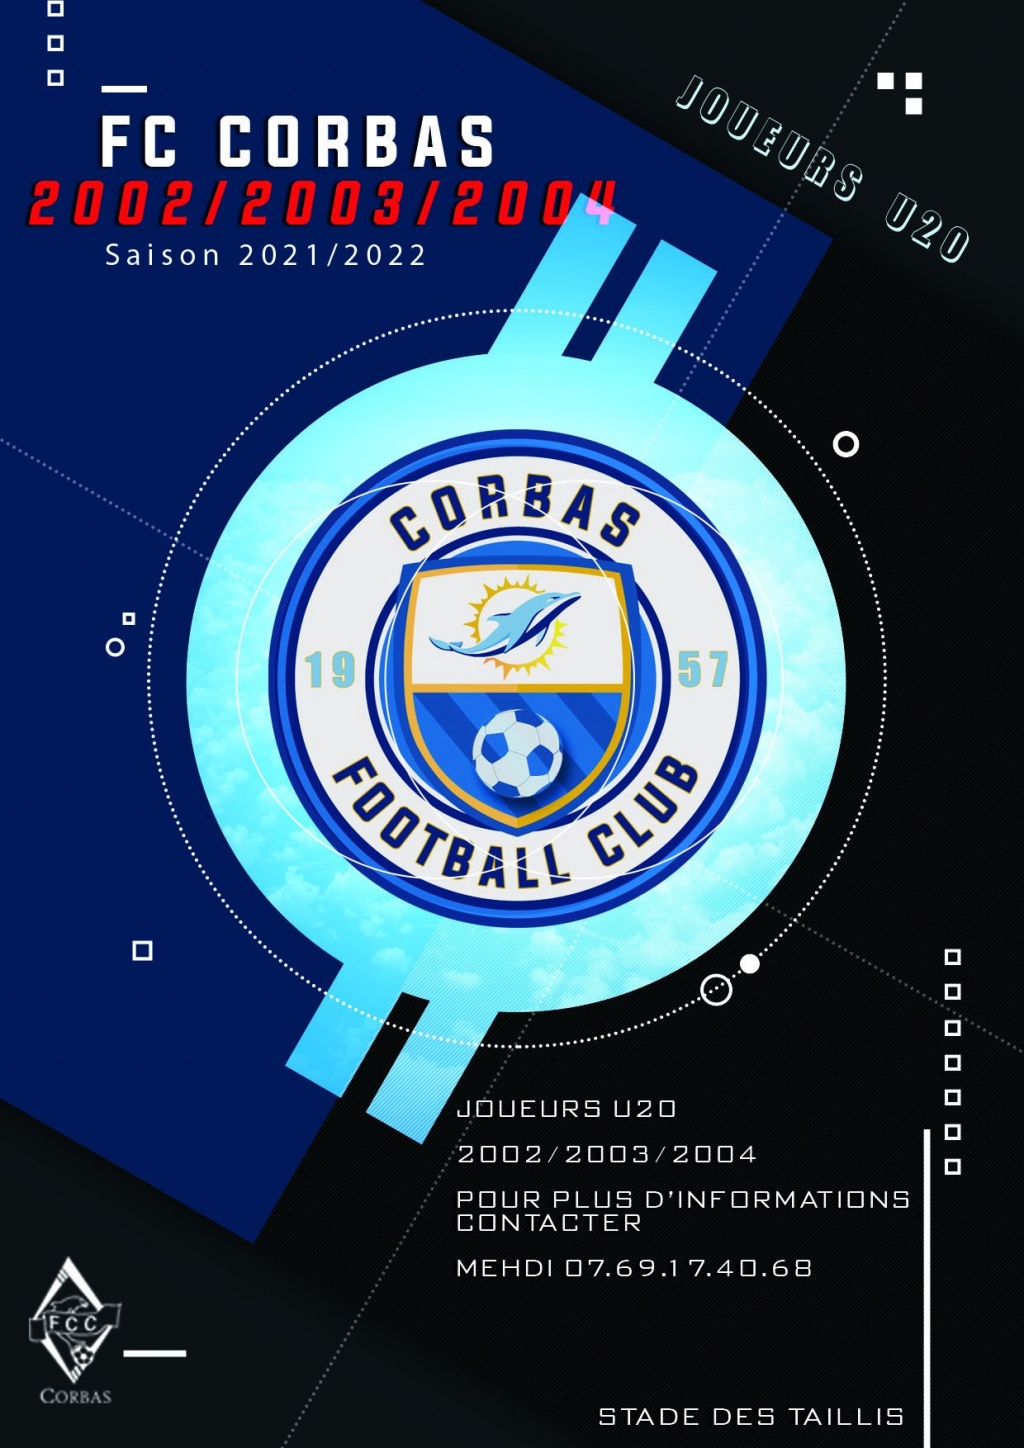 FC CORBAS RECHERCHE JOUEURS U20